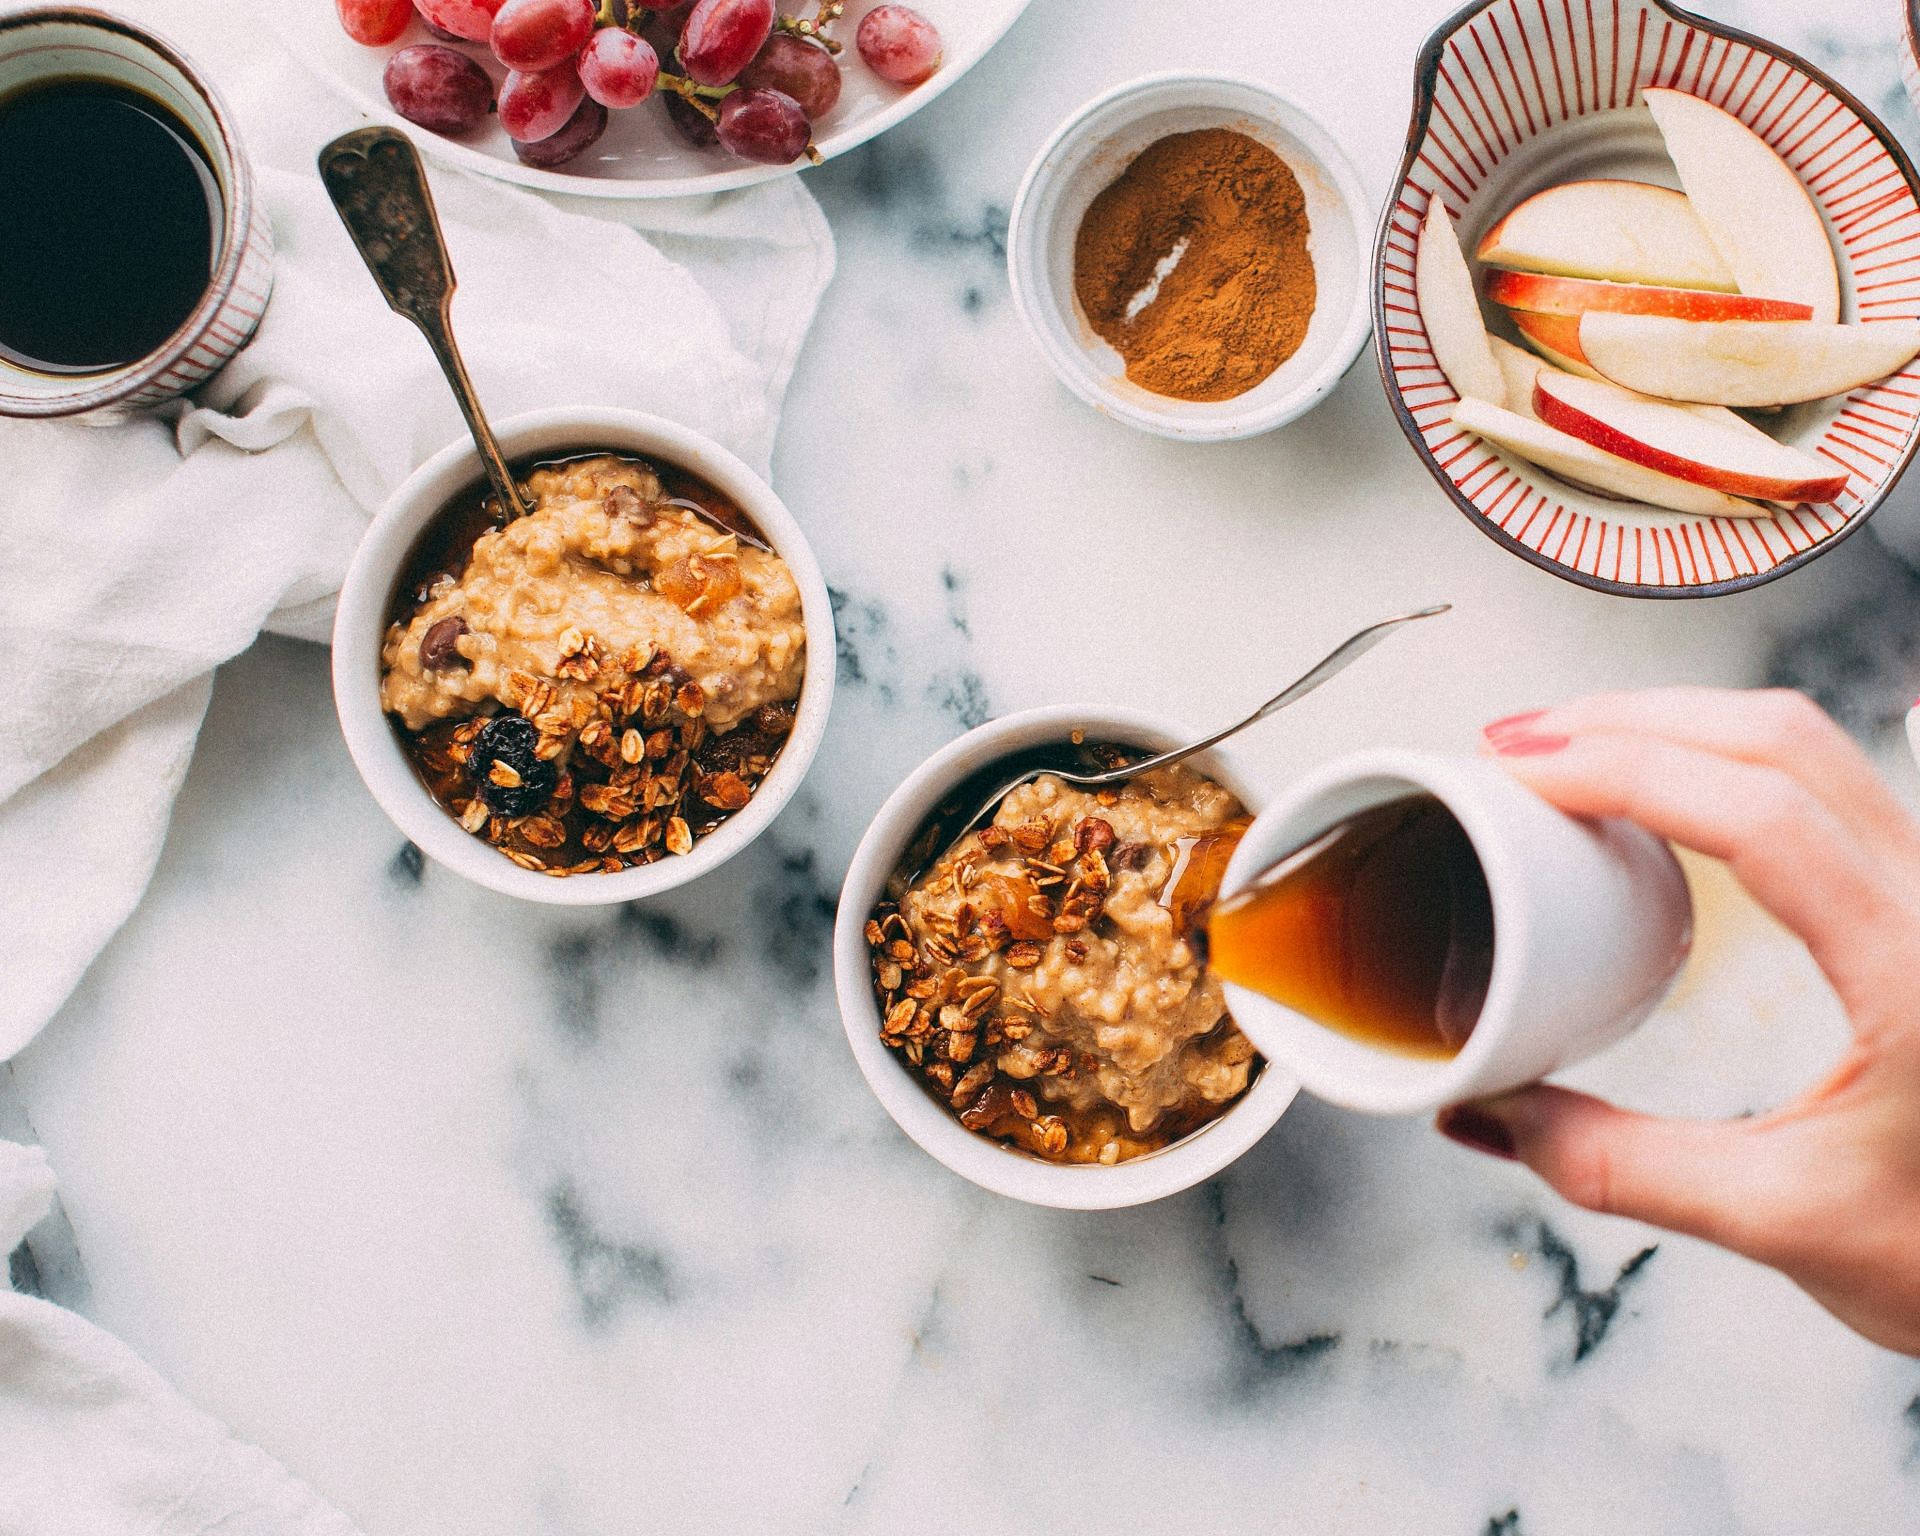 Porridge as breakfast (Image by Jennifer Pallian/Unsplash)